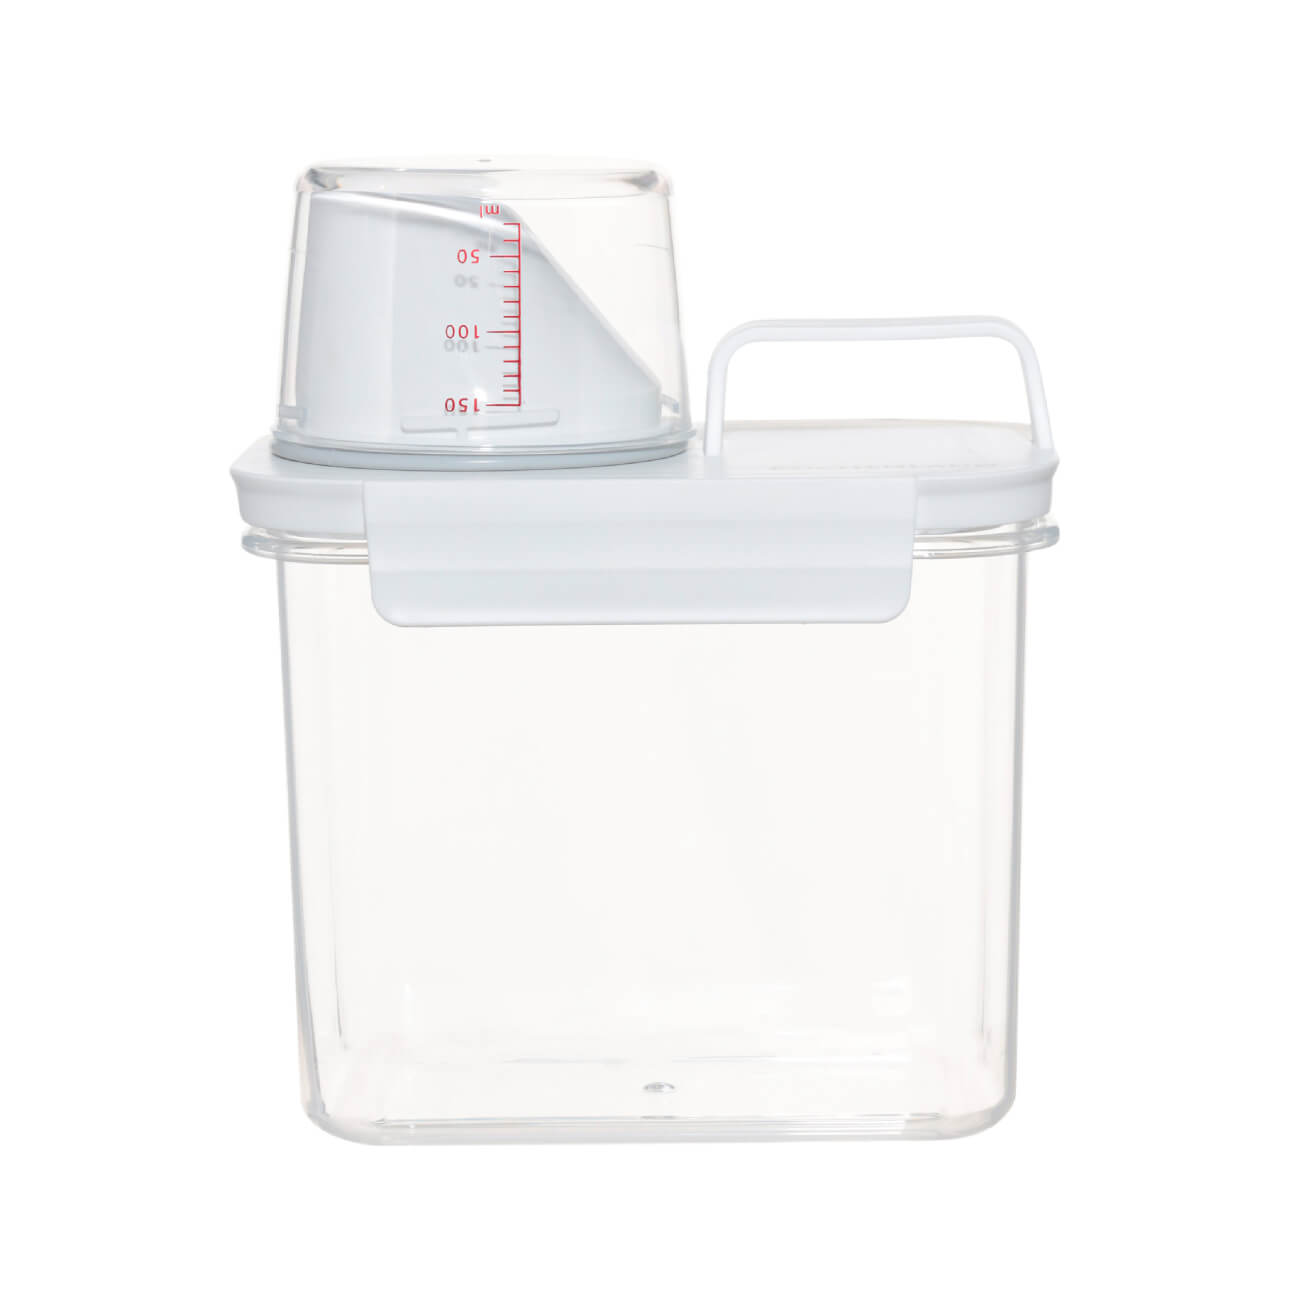 Контейнер для стирального порошка или геля, 1,1 л, с мерником, пластик, белый, Compact контейнер пищевой mehrzer bake